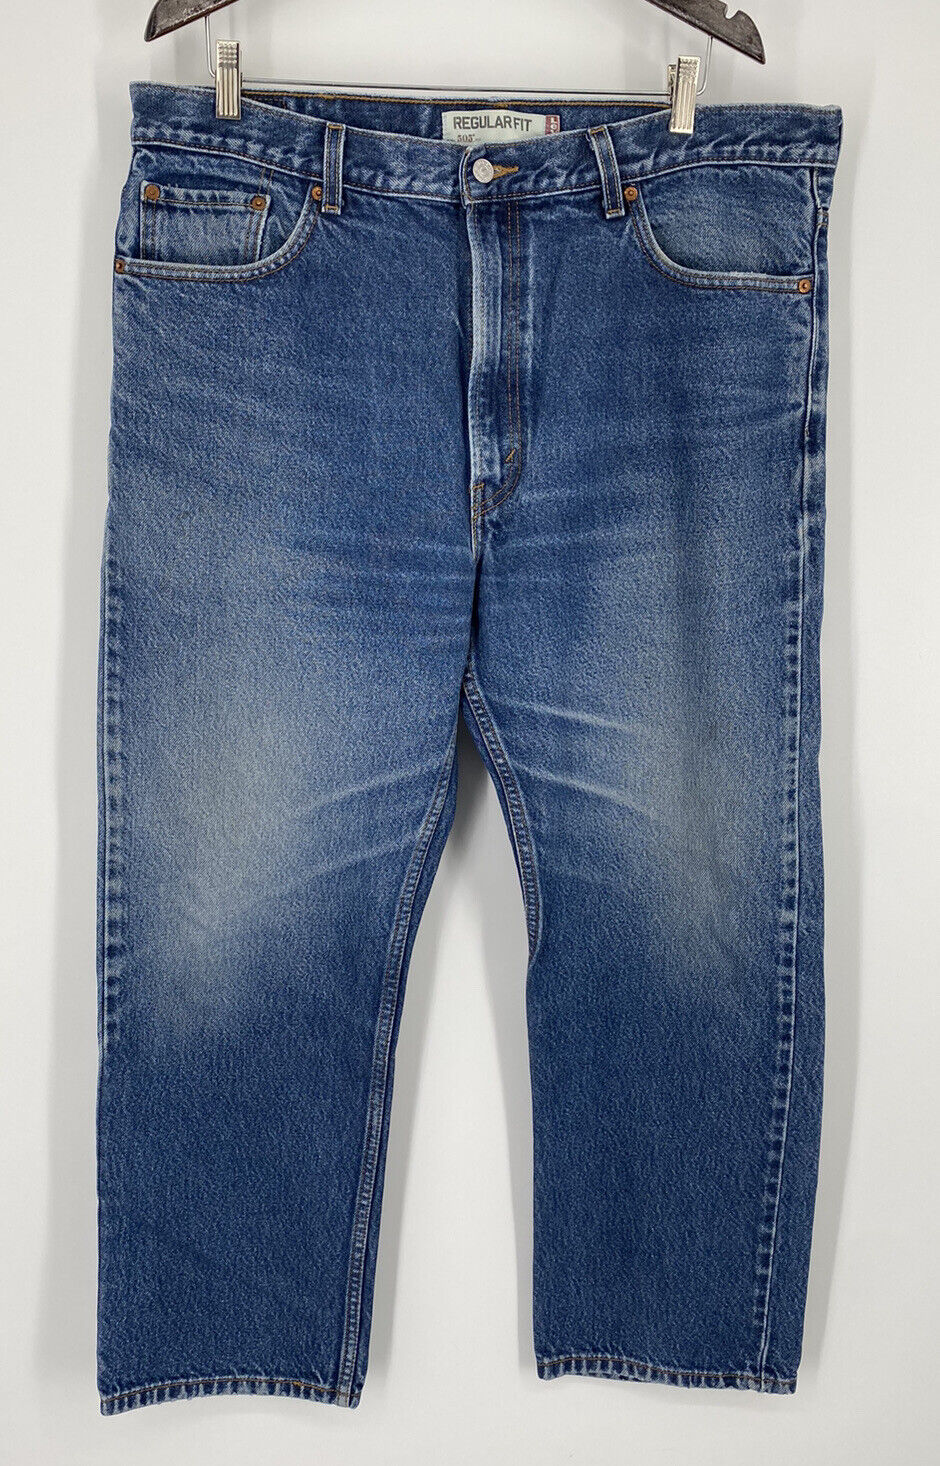 Levis 505 Regular Fit Denim Blue Jeans Red Tag Size 38x28 (40x30 Tag) - ST  | eBay